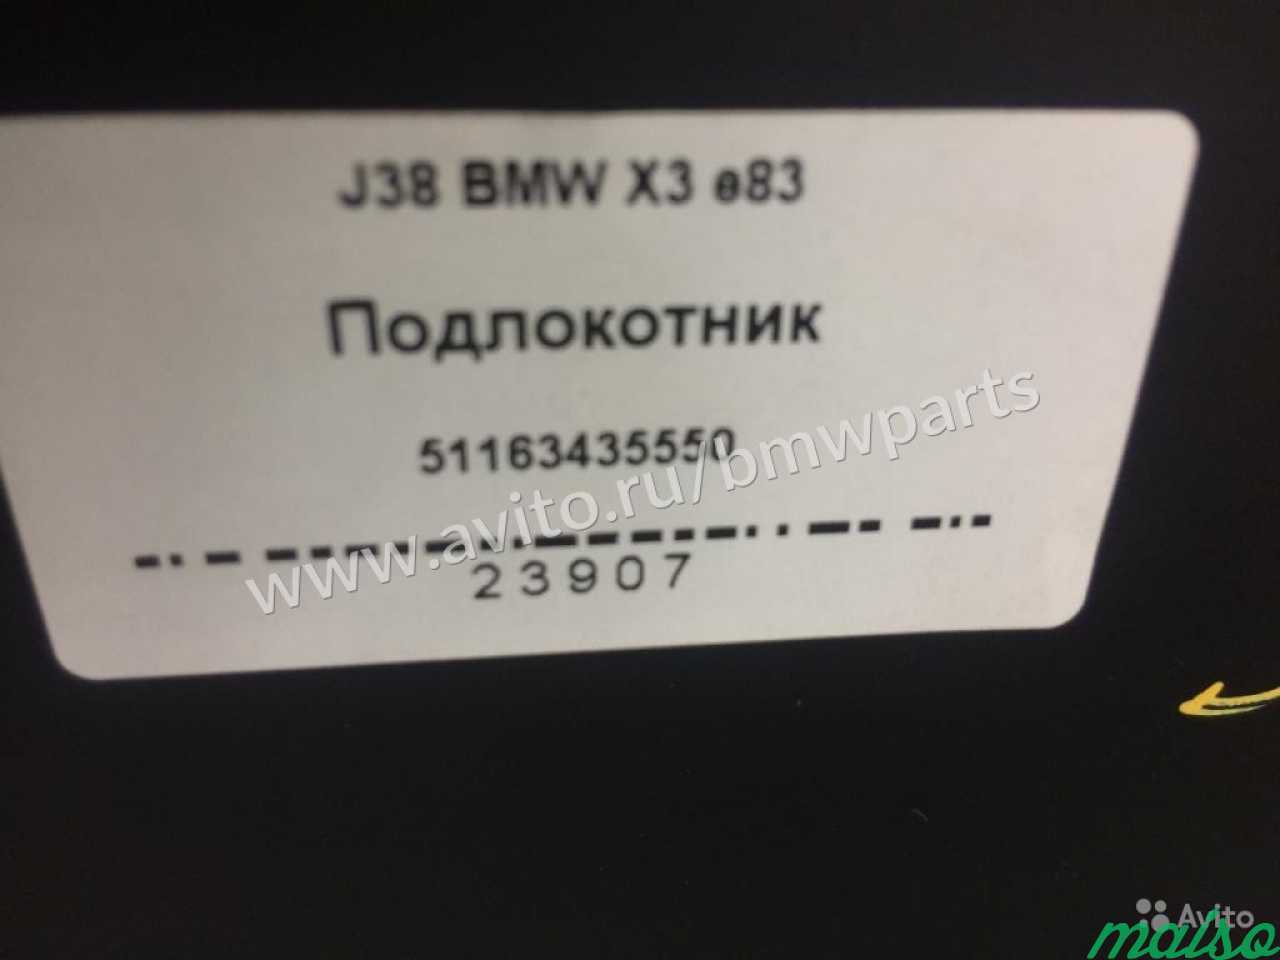 Подлокотник BMW X3 e83 в Санкт-Петербурге. Фото 5